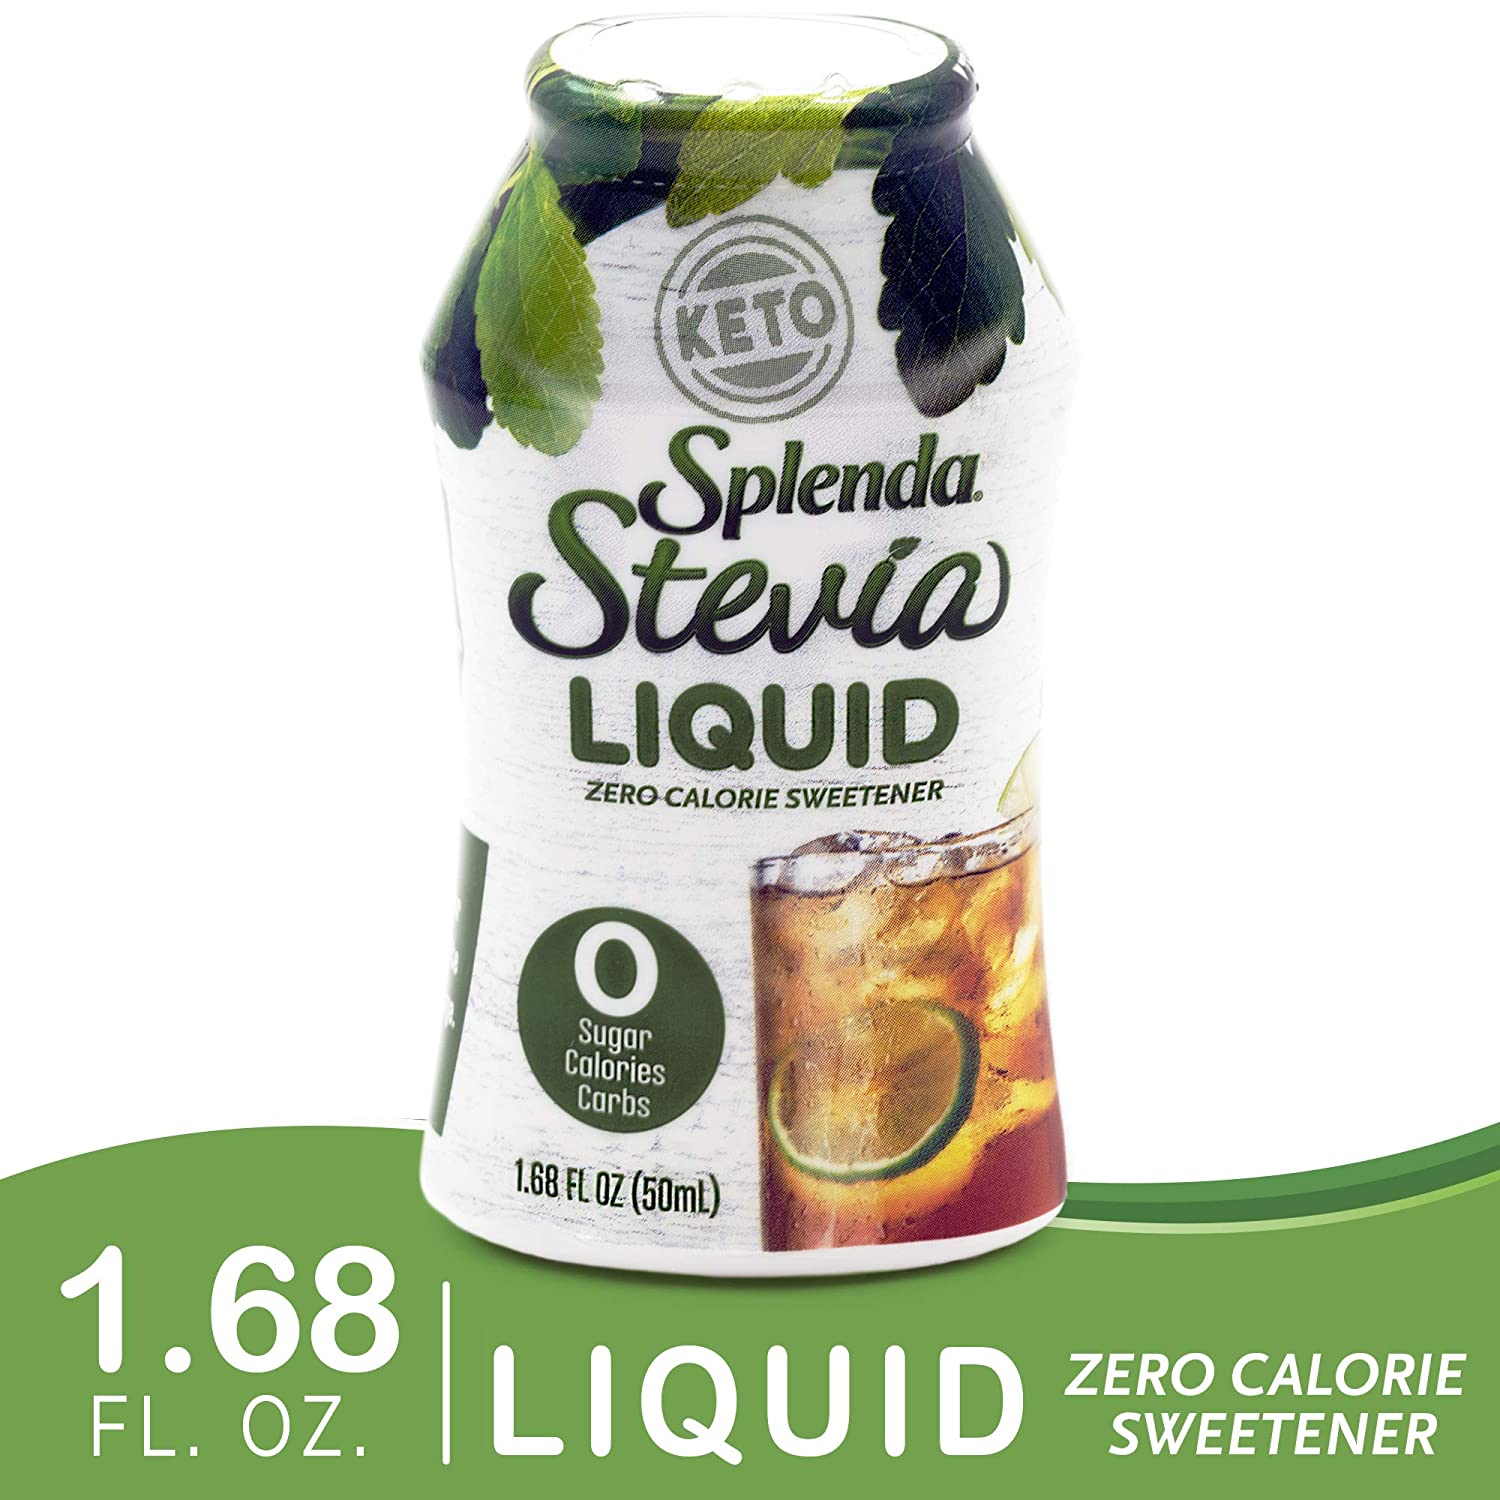 Splenda Stevia Liquid Zero Calorie Sweetener, 1.68 fl oz Bottle - image 1 of 11